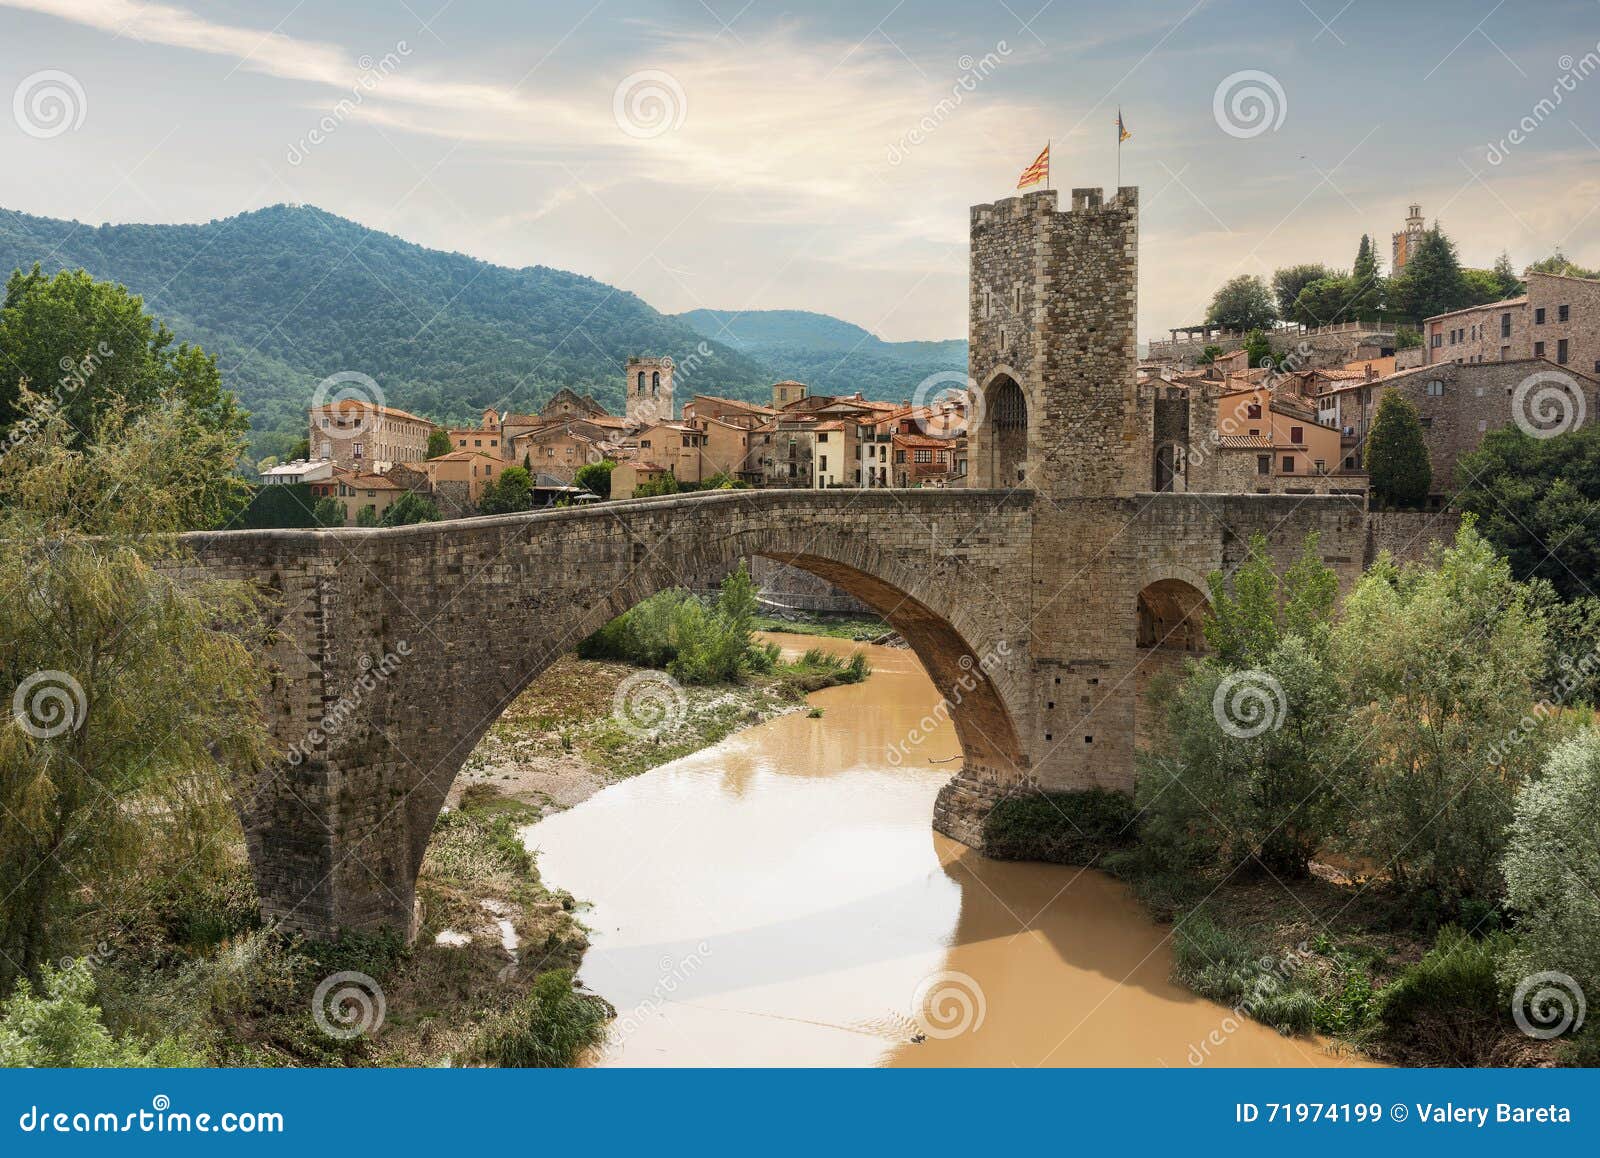 medieval village and bridge in besalu. catalonia, spain